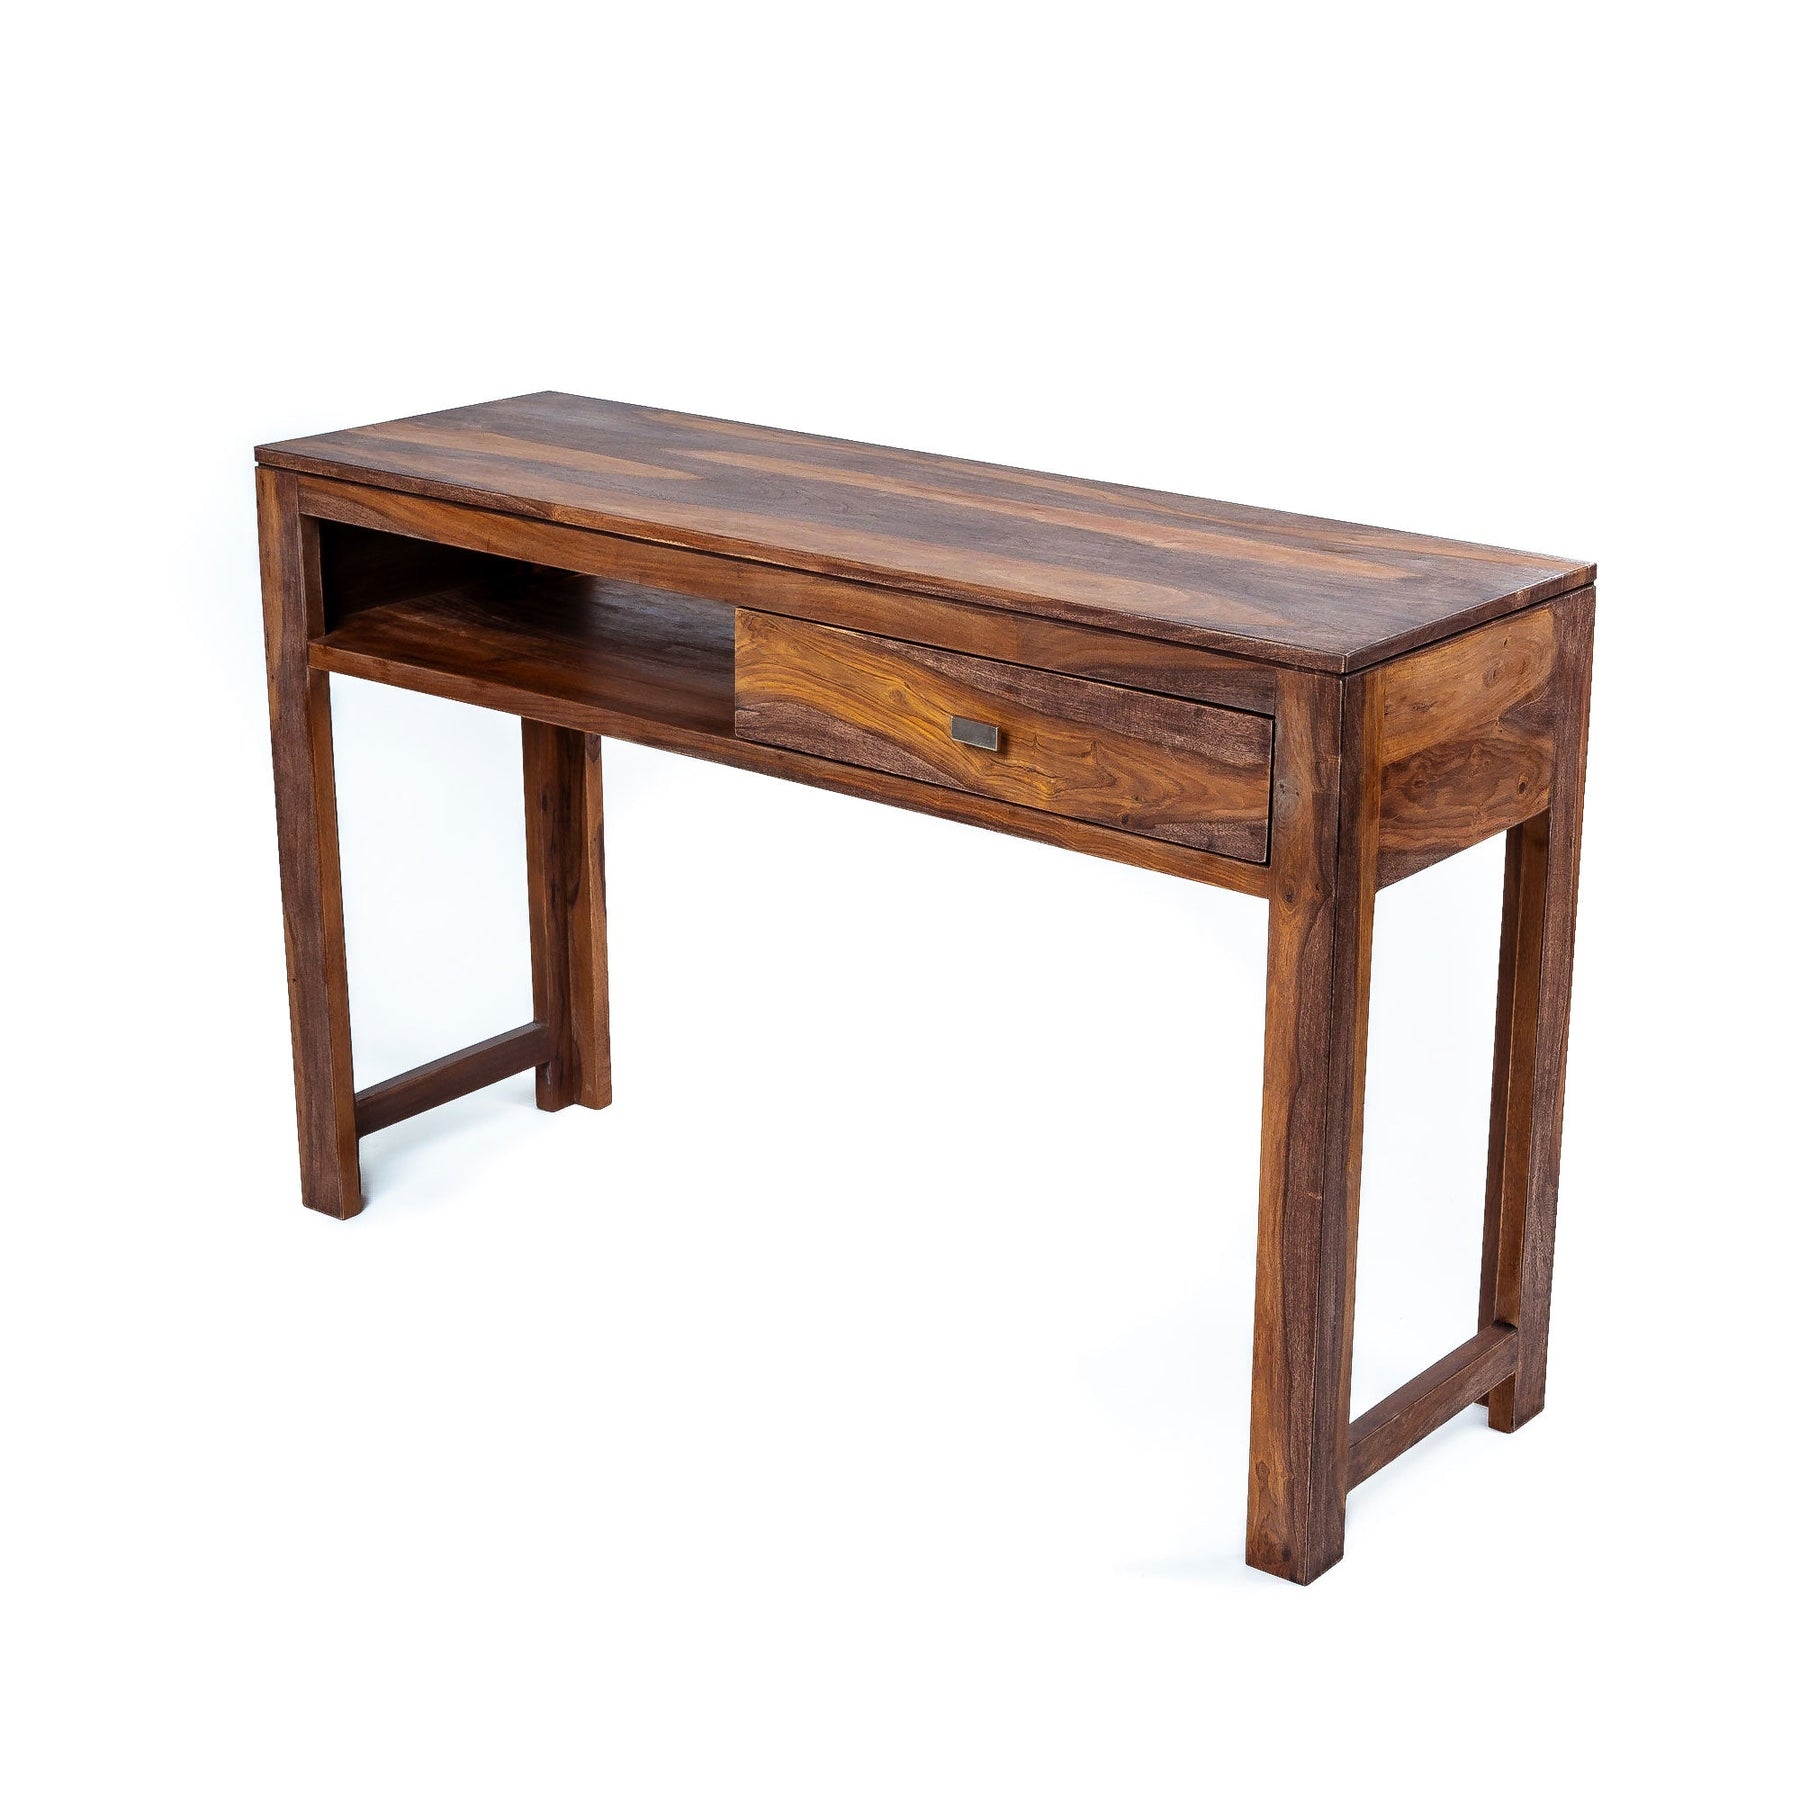 Bureau console grand | Grande console en bois | Bureau de table console avec un tiroir et une étagère